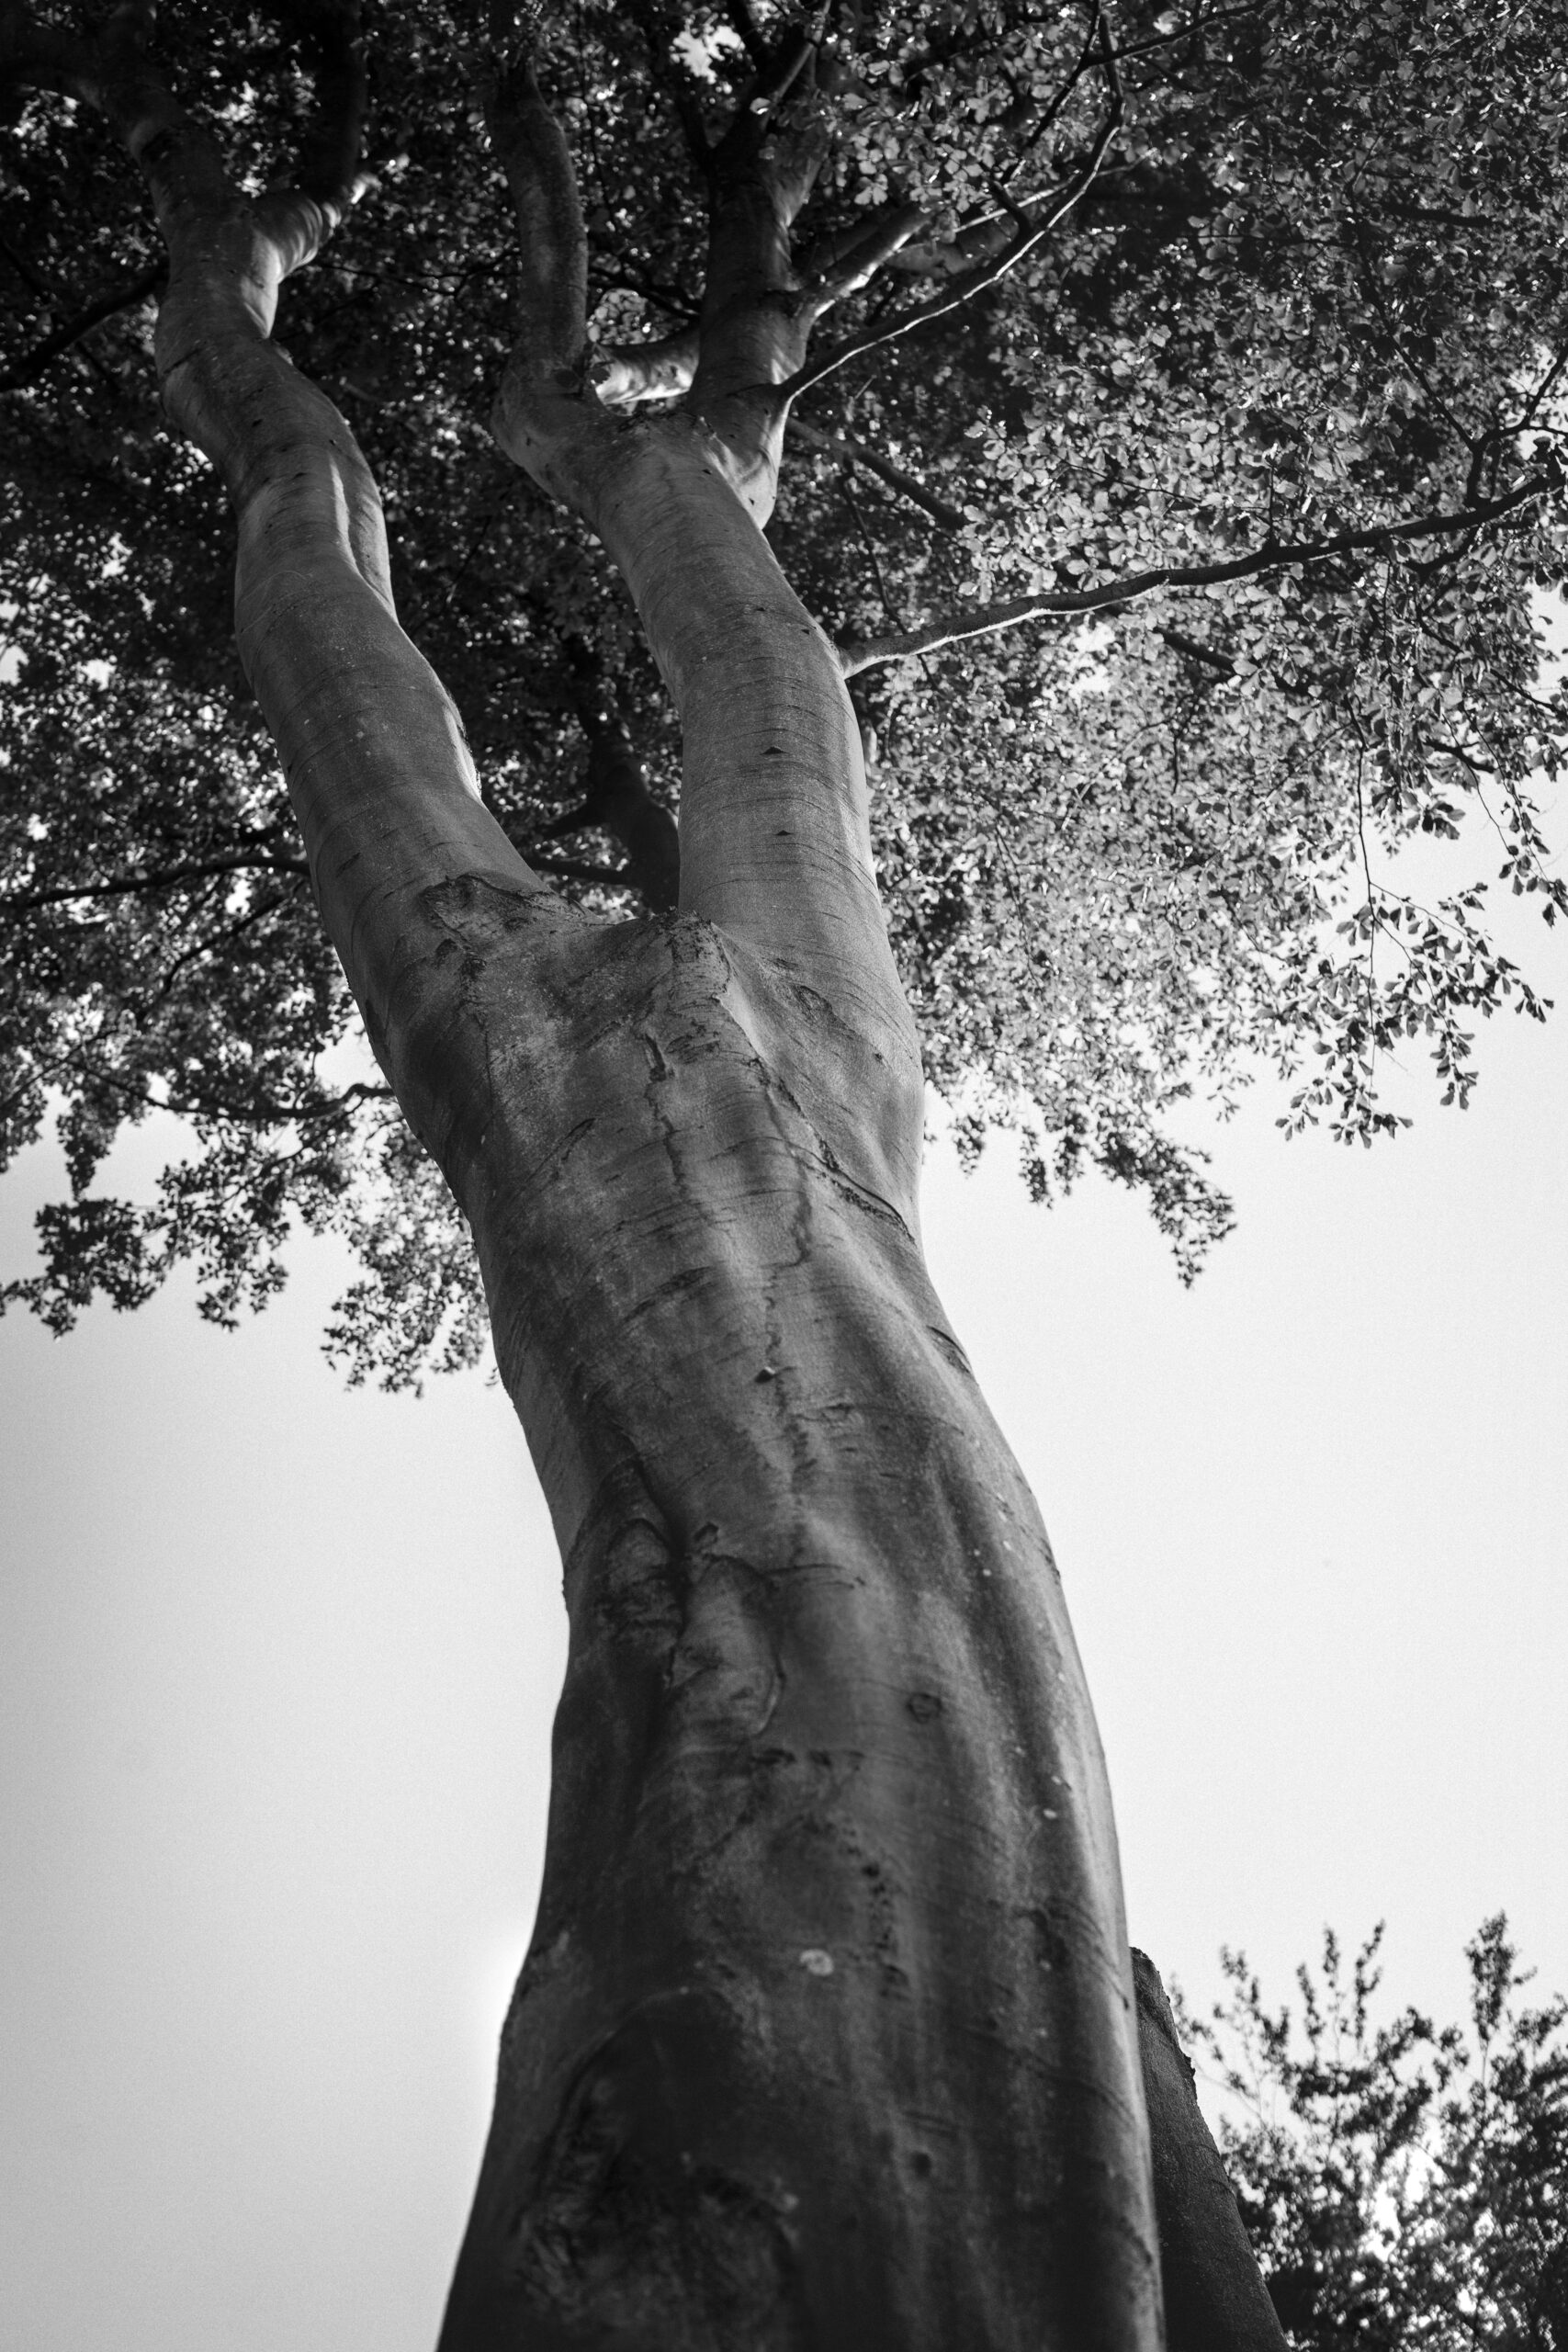 Czarno-biale zdjecie drzewa lisciastego wykonane z perspektywy żabiej.